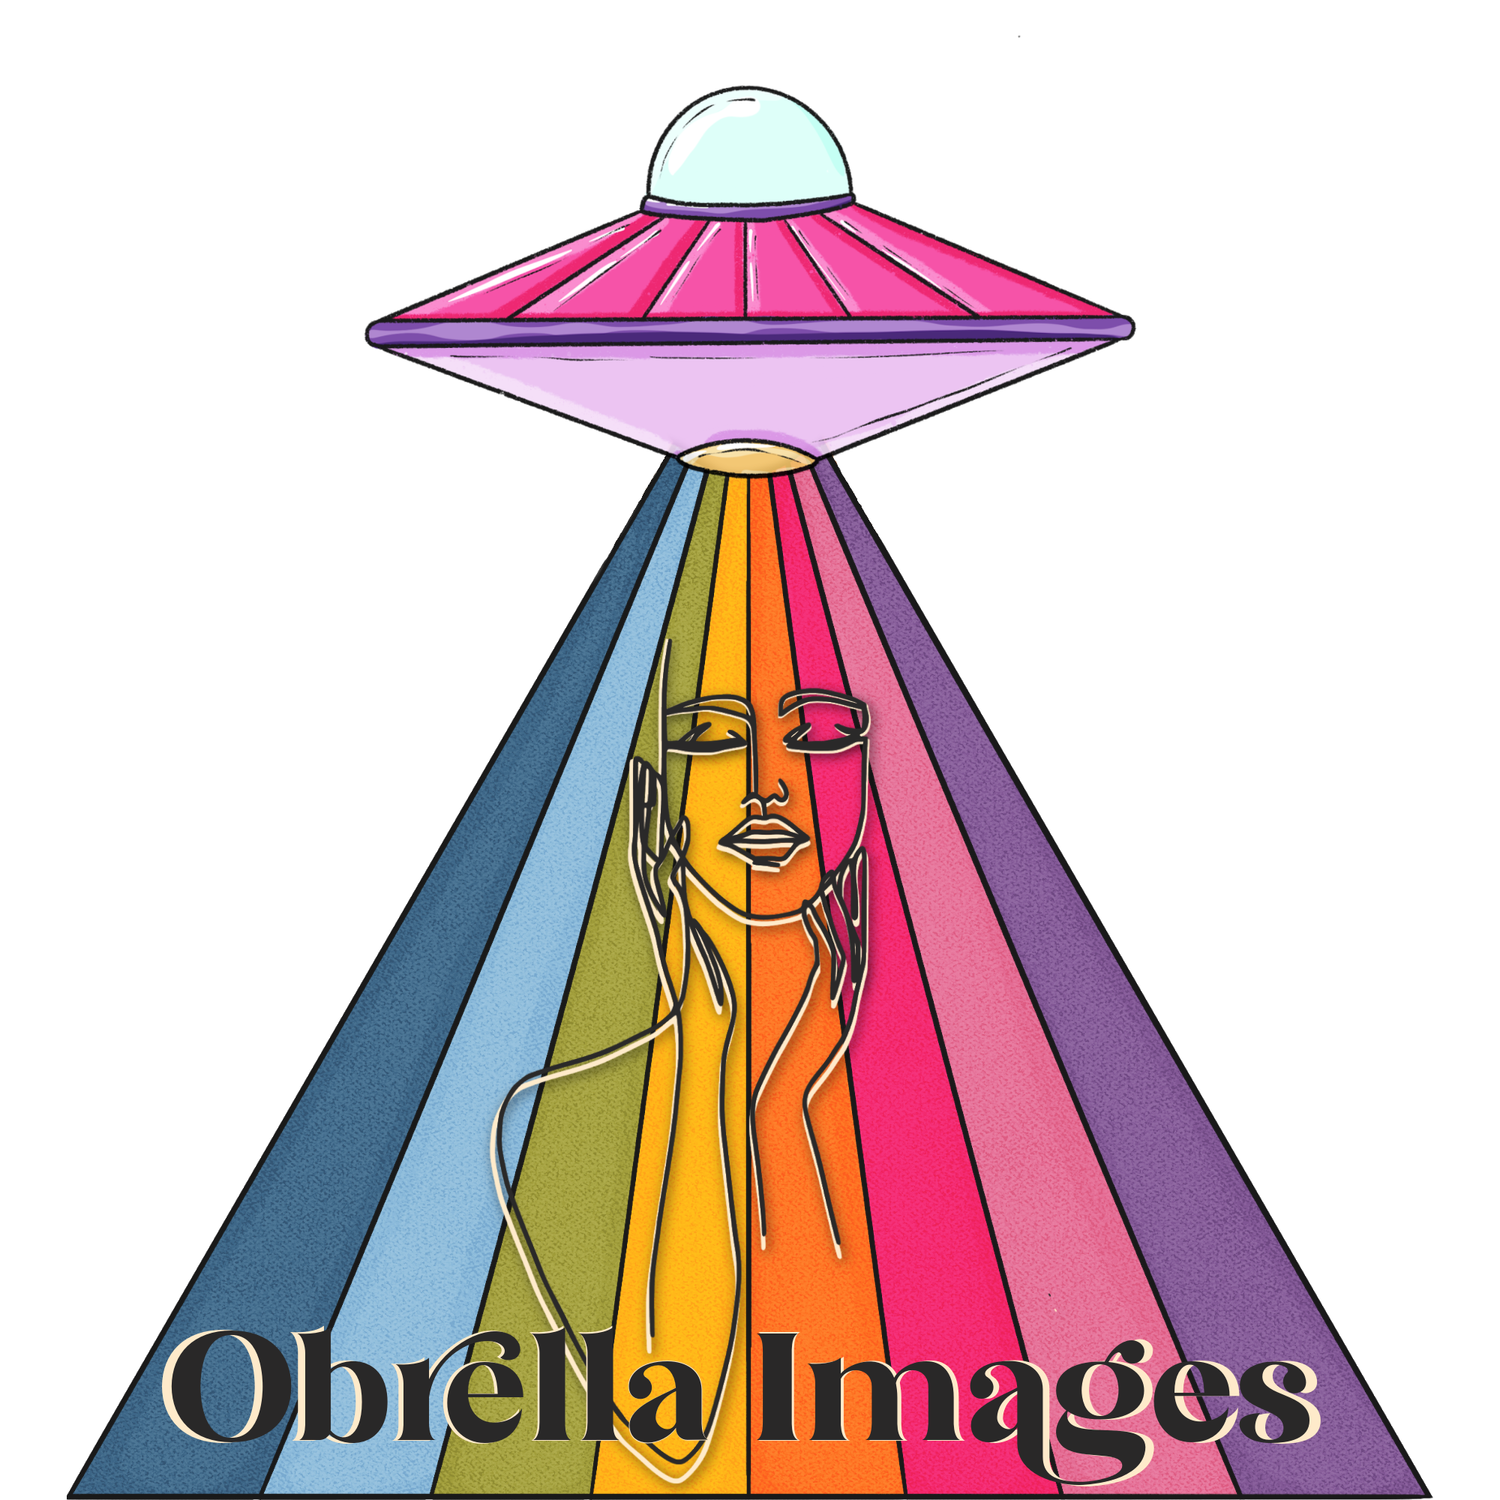 Obrella Images LLC